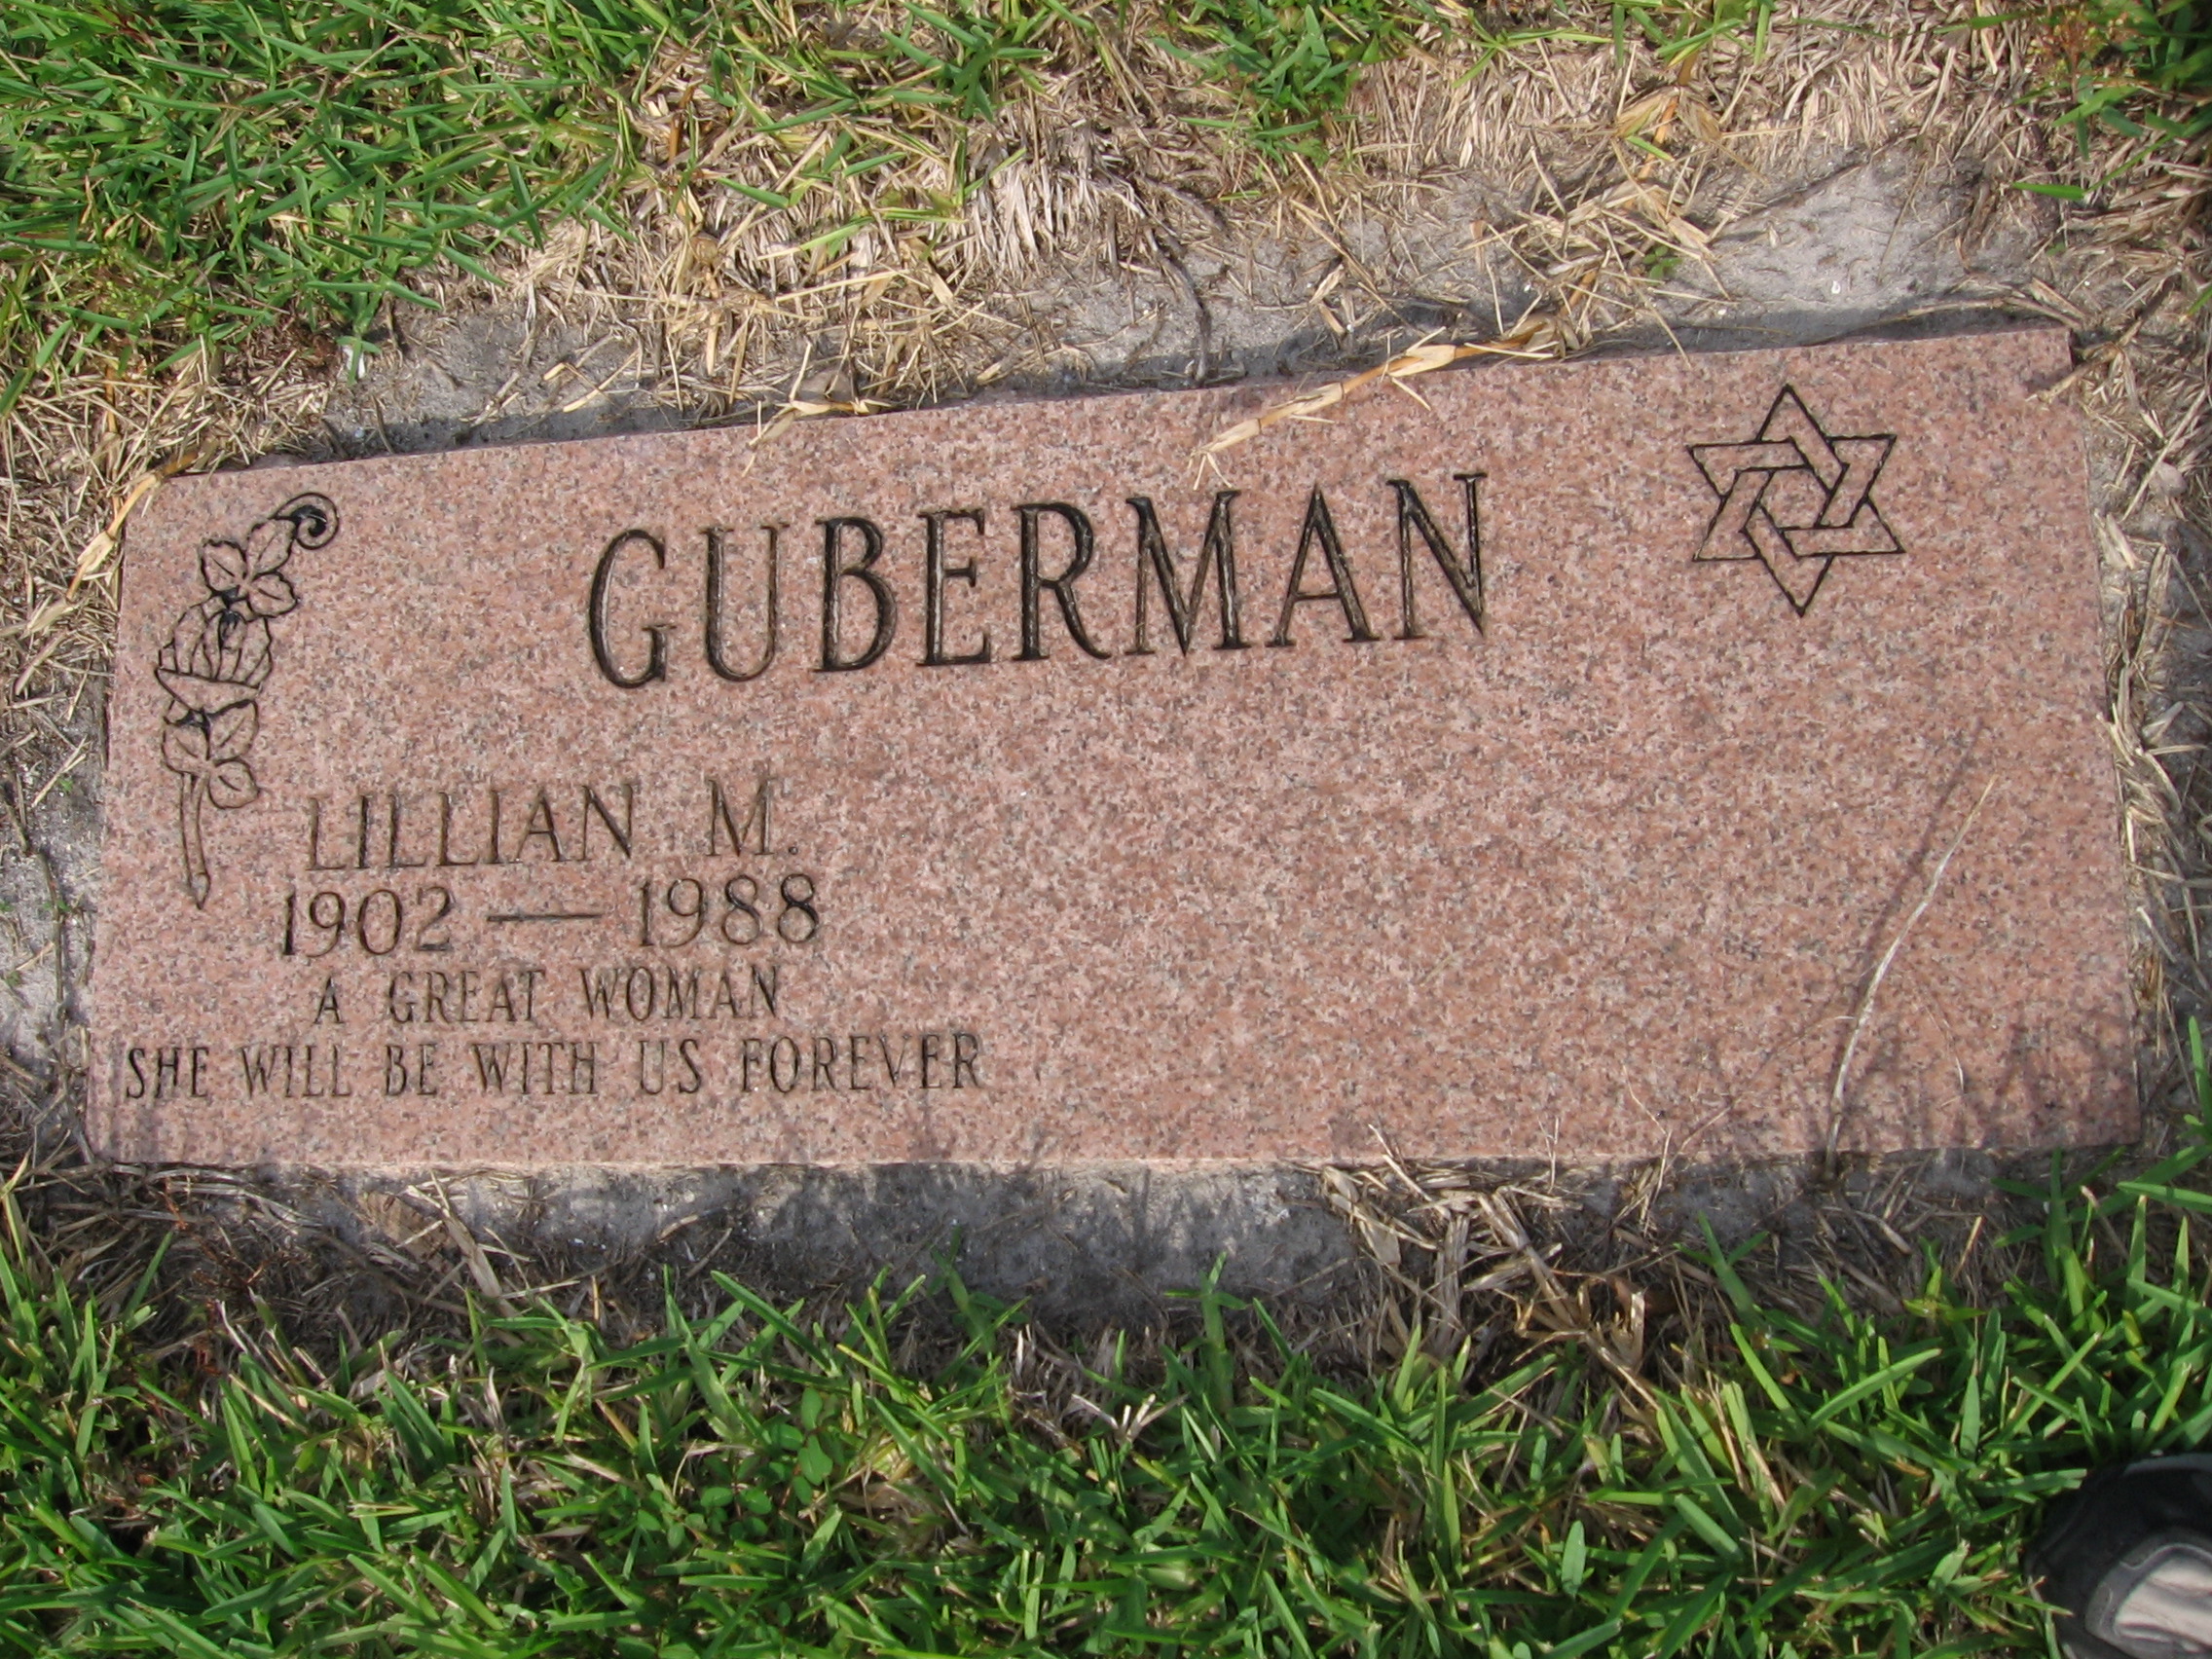 Lillian M Guberman